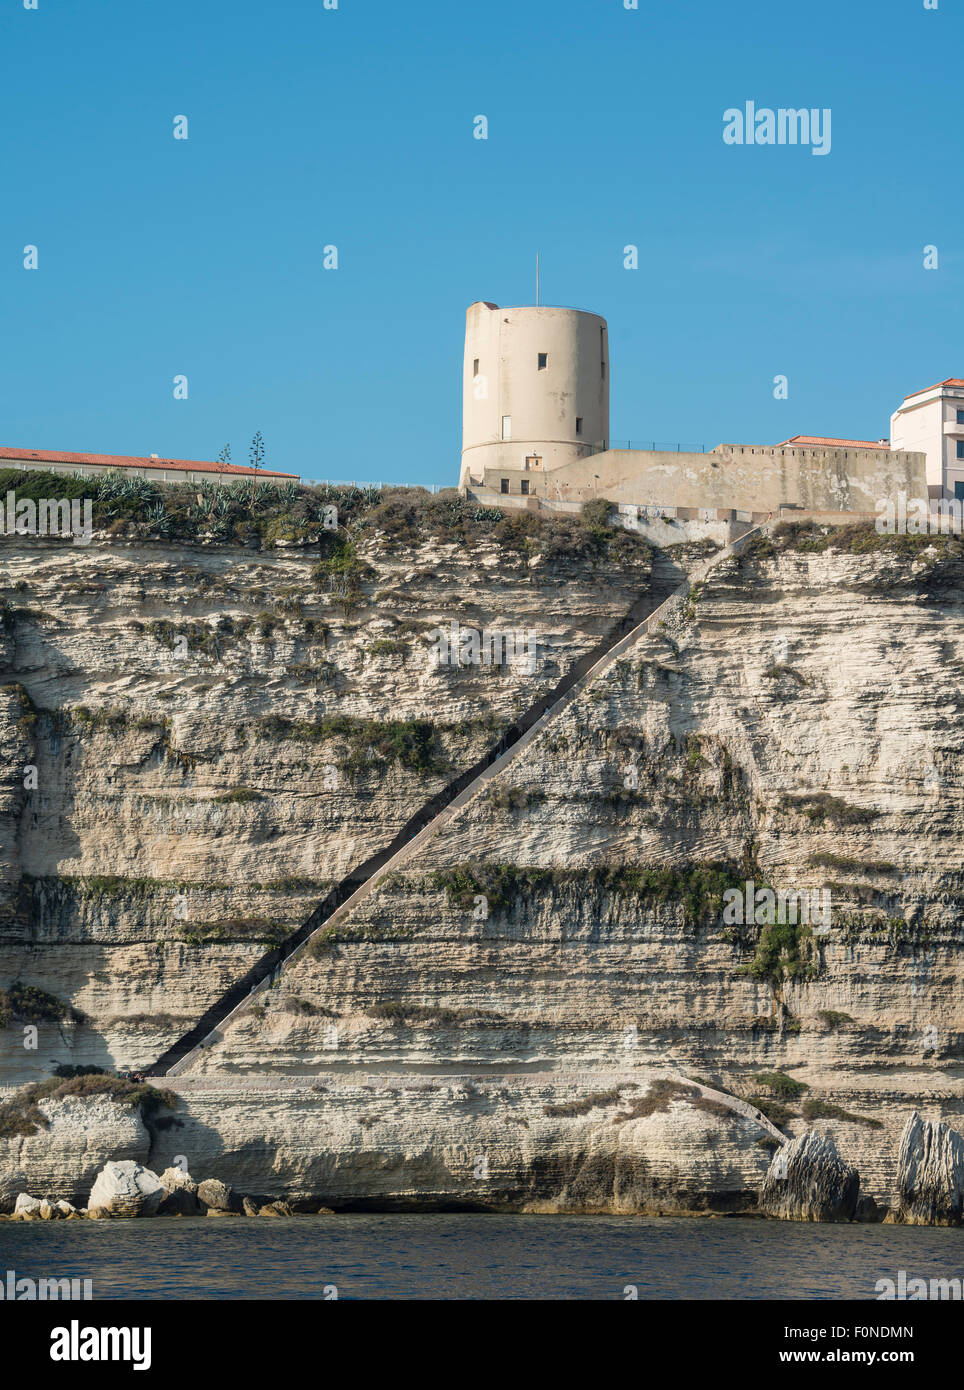 Escalier du roi d'Argonia, falaises de craie, Bonifacio, Corse, France Banque D'Images